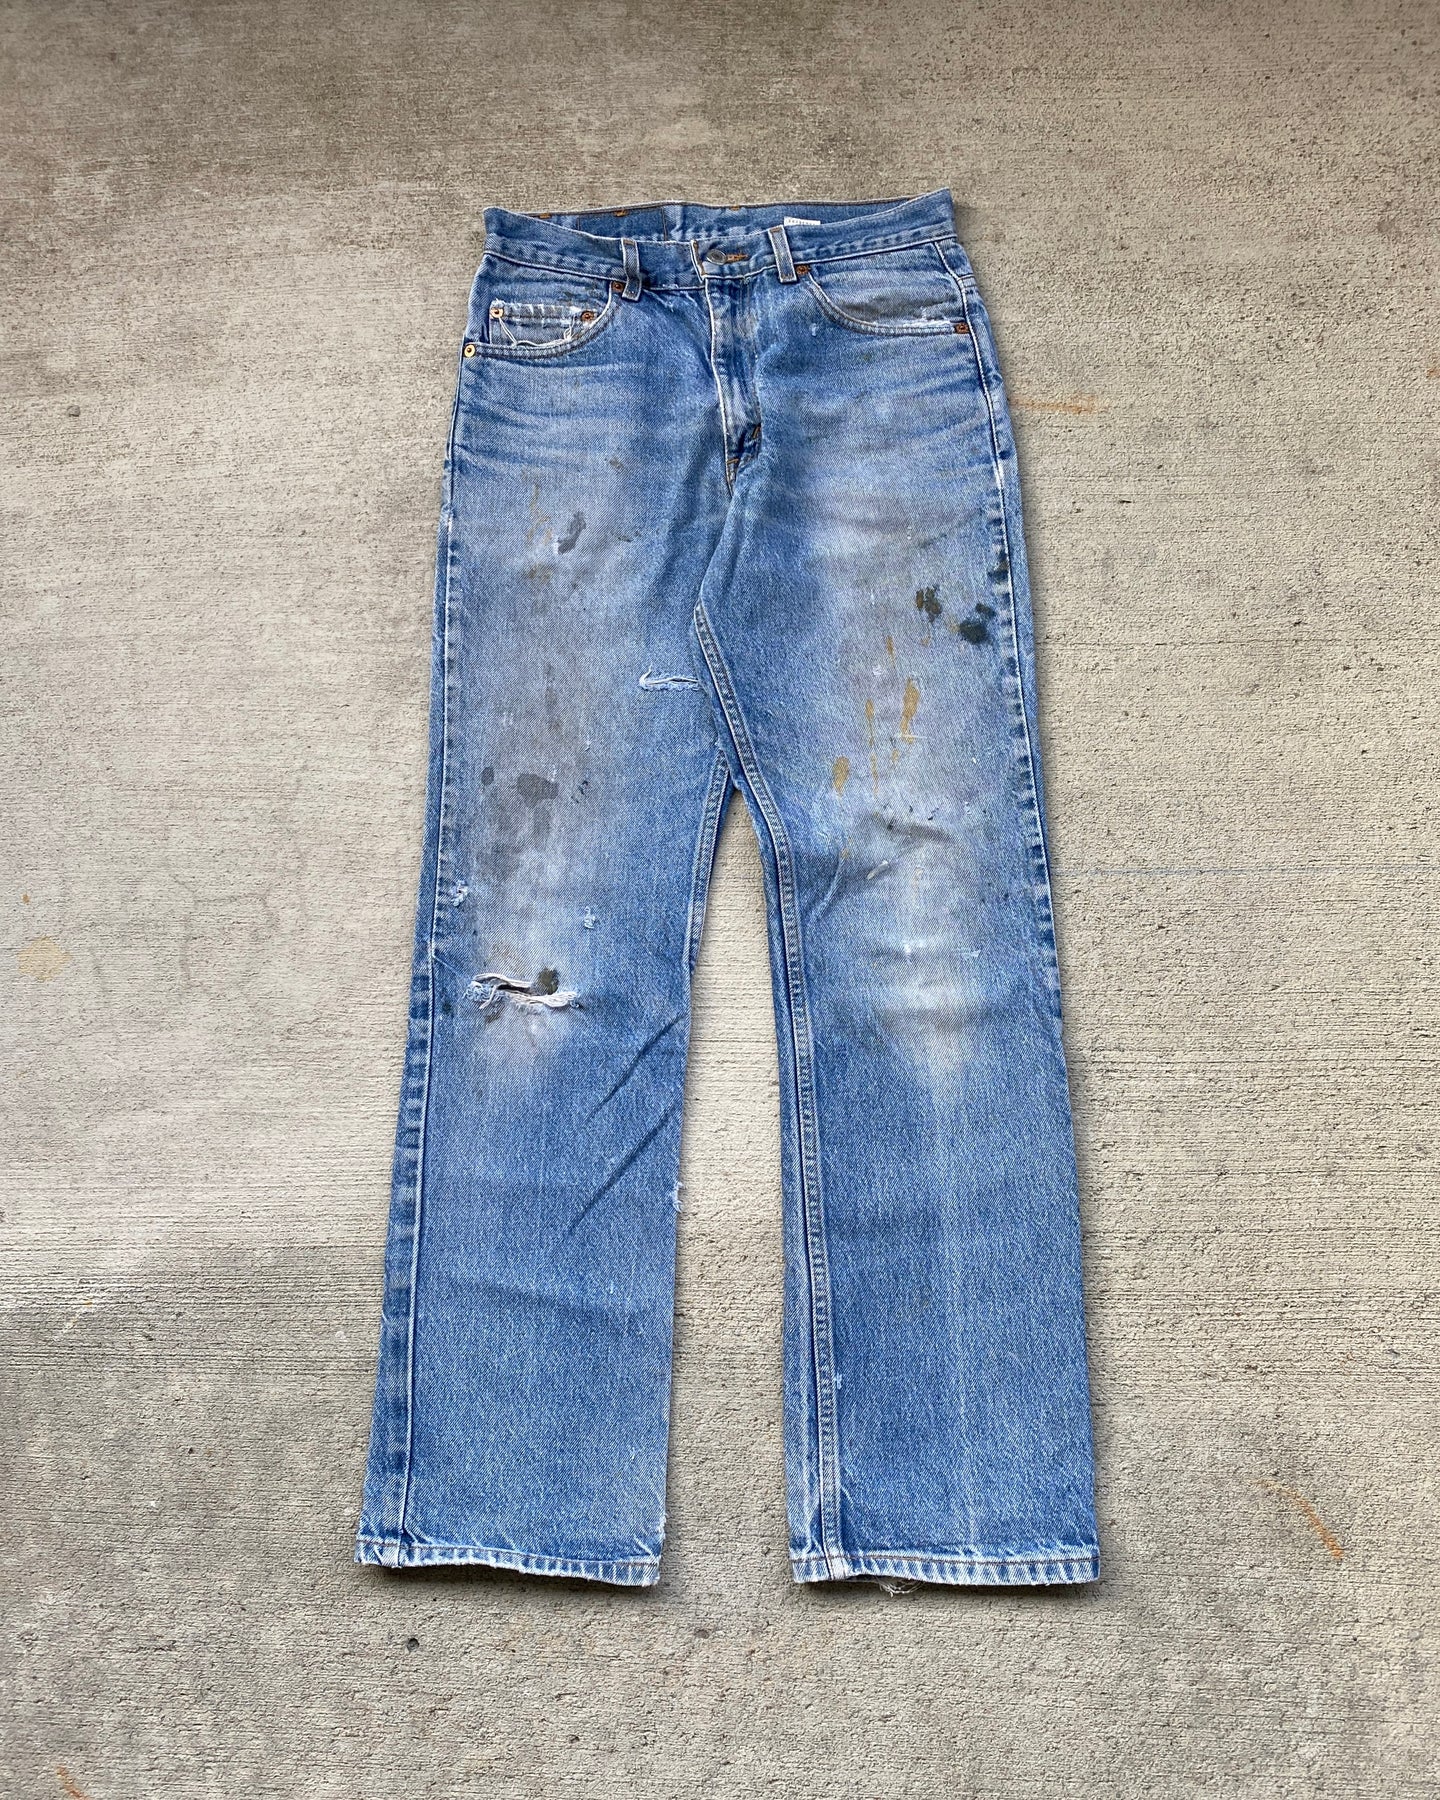 1990s Levi's 517 Painter's Mid Wash Jeans - Size 30 x 31